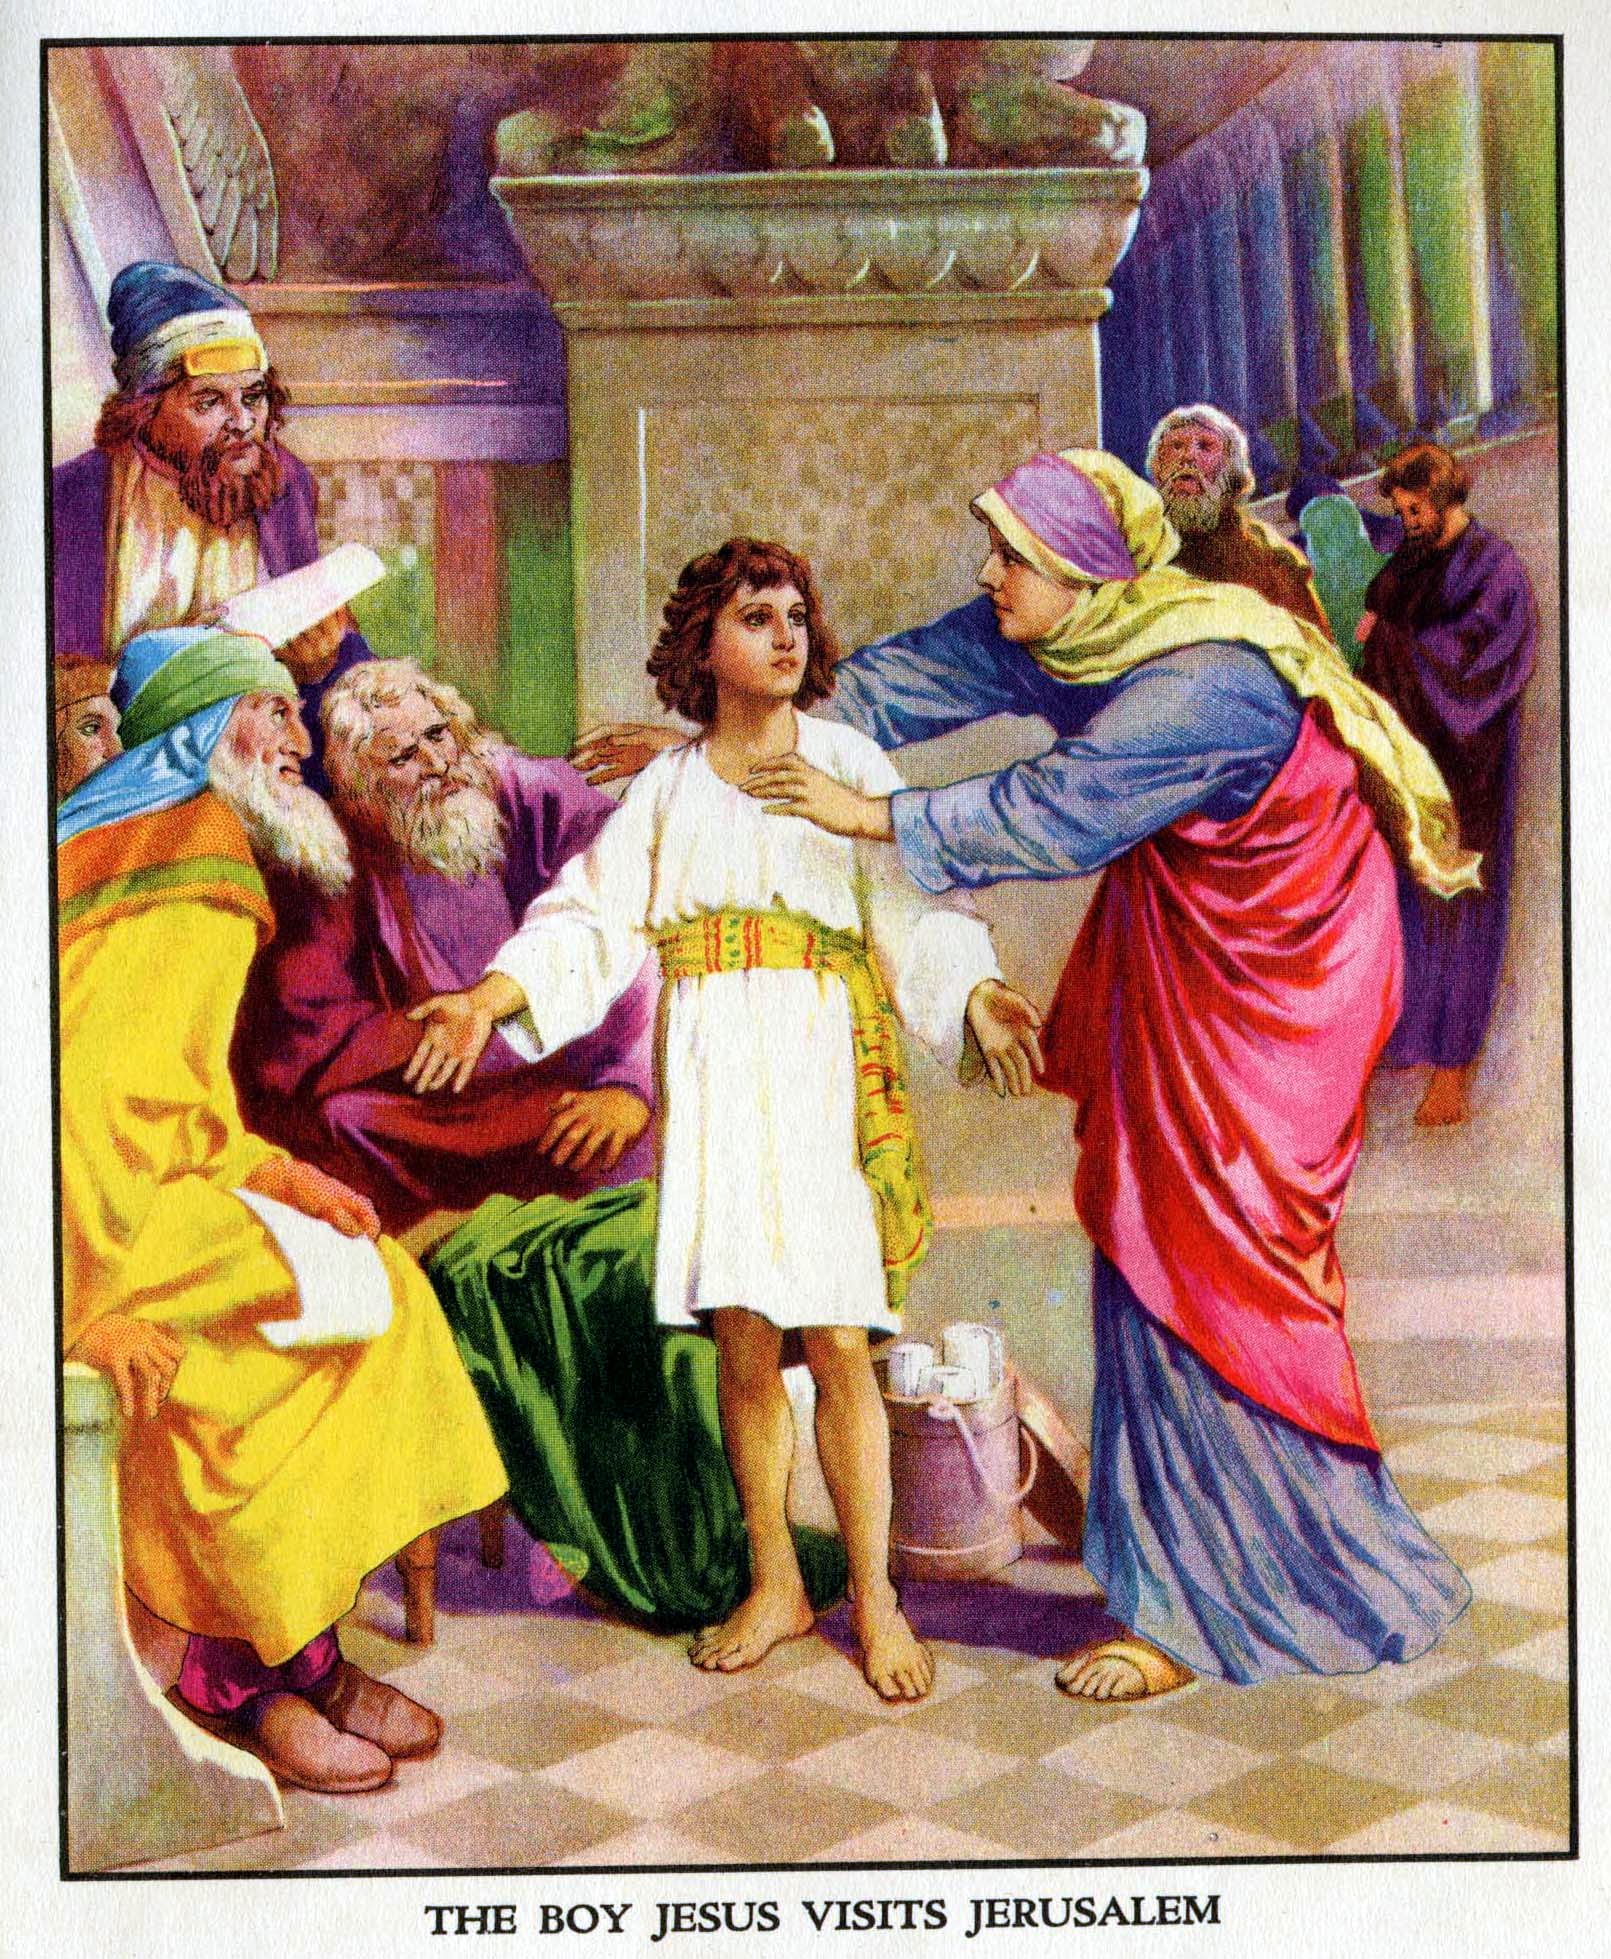 The Boy Jesus Visits Jerusalem